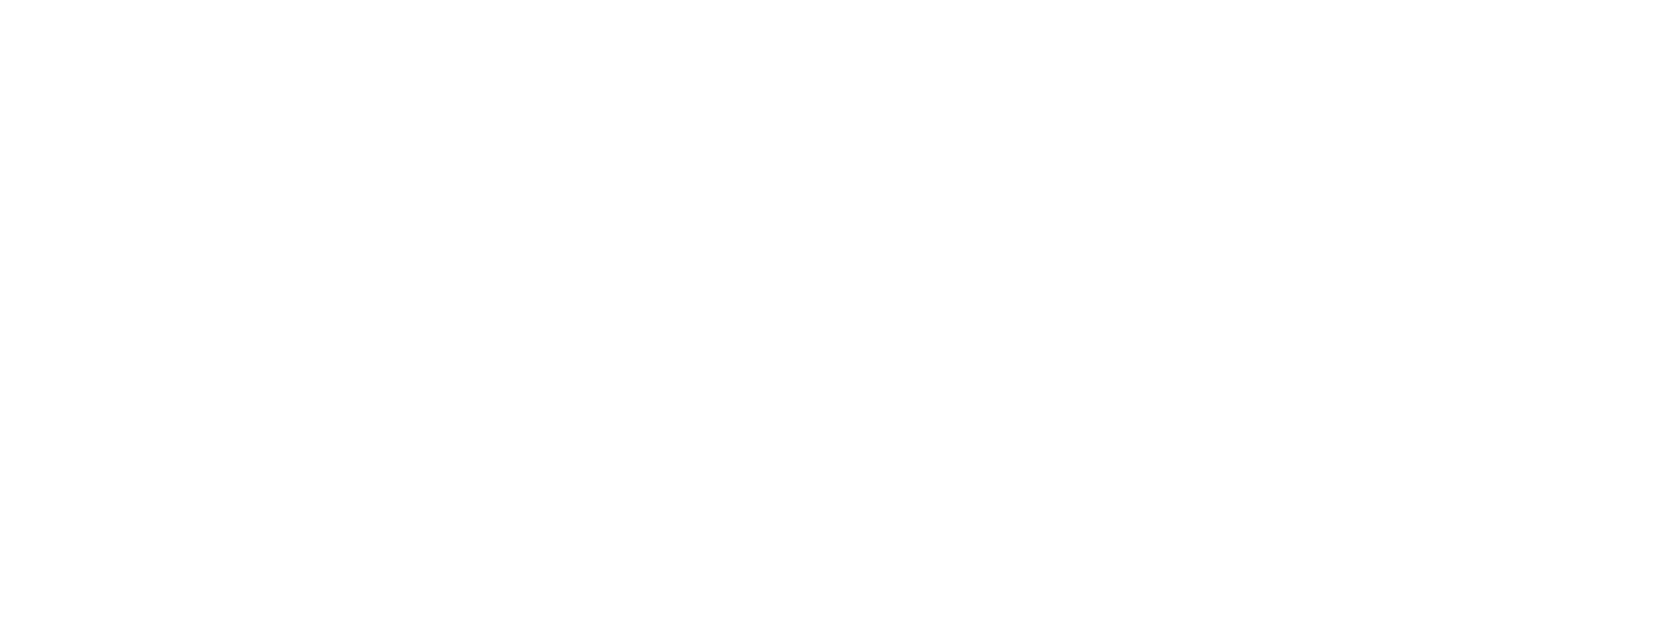 Профиль алюминиевый Flexy KONSTRUKTOR 01 для натяжных потолков: размер, вид, применение, способ монтажа в Москве, СПБ и России